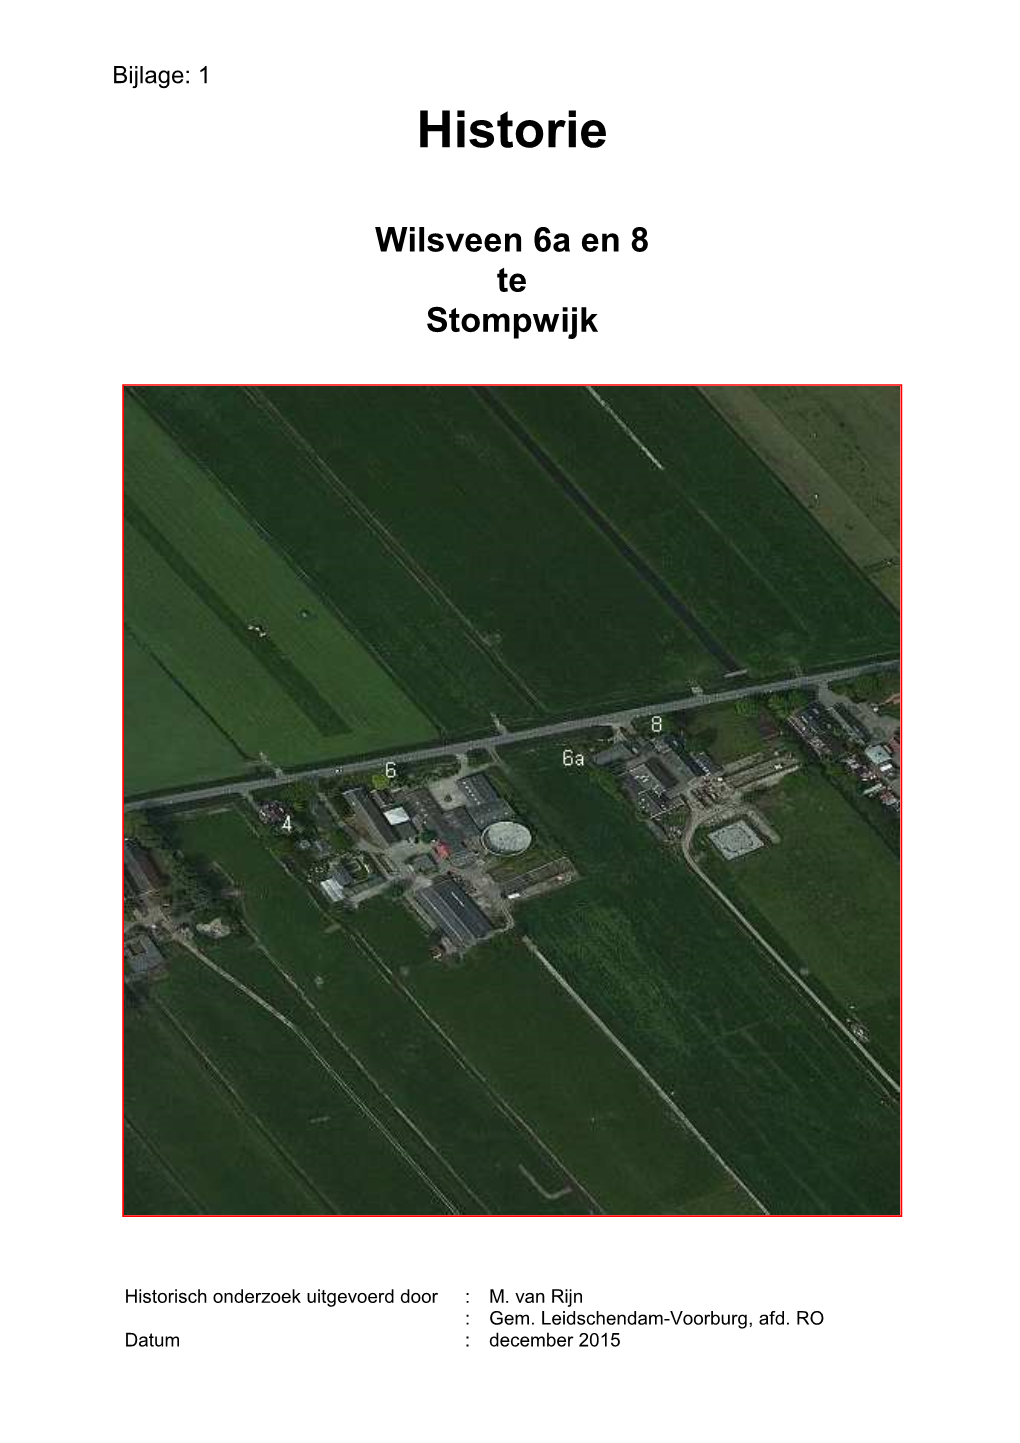 Wilsveen 06A En 8 Historie Gemeente Dec 2015